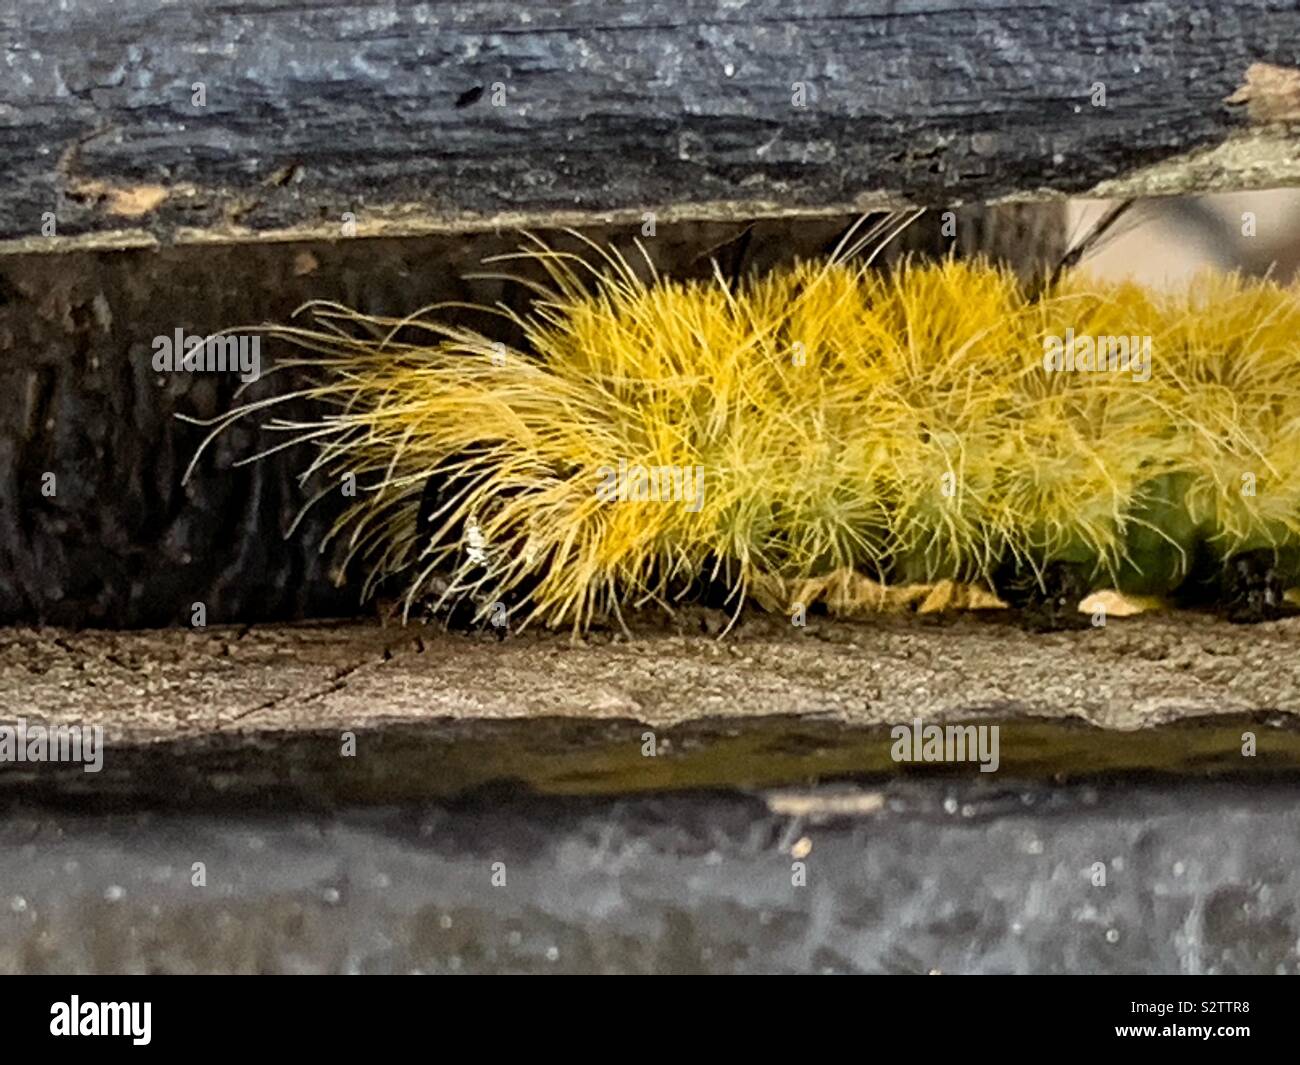 Di colore giallo brillante fuzzy e peloso pugnale americano Tarma (Acronicta americana) caterpillar che ha ciglia velenosi. Foto Stock